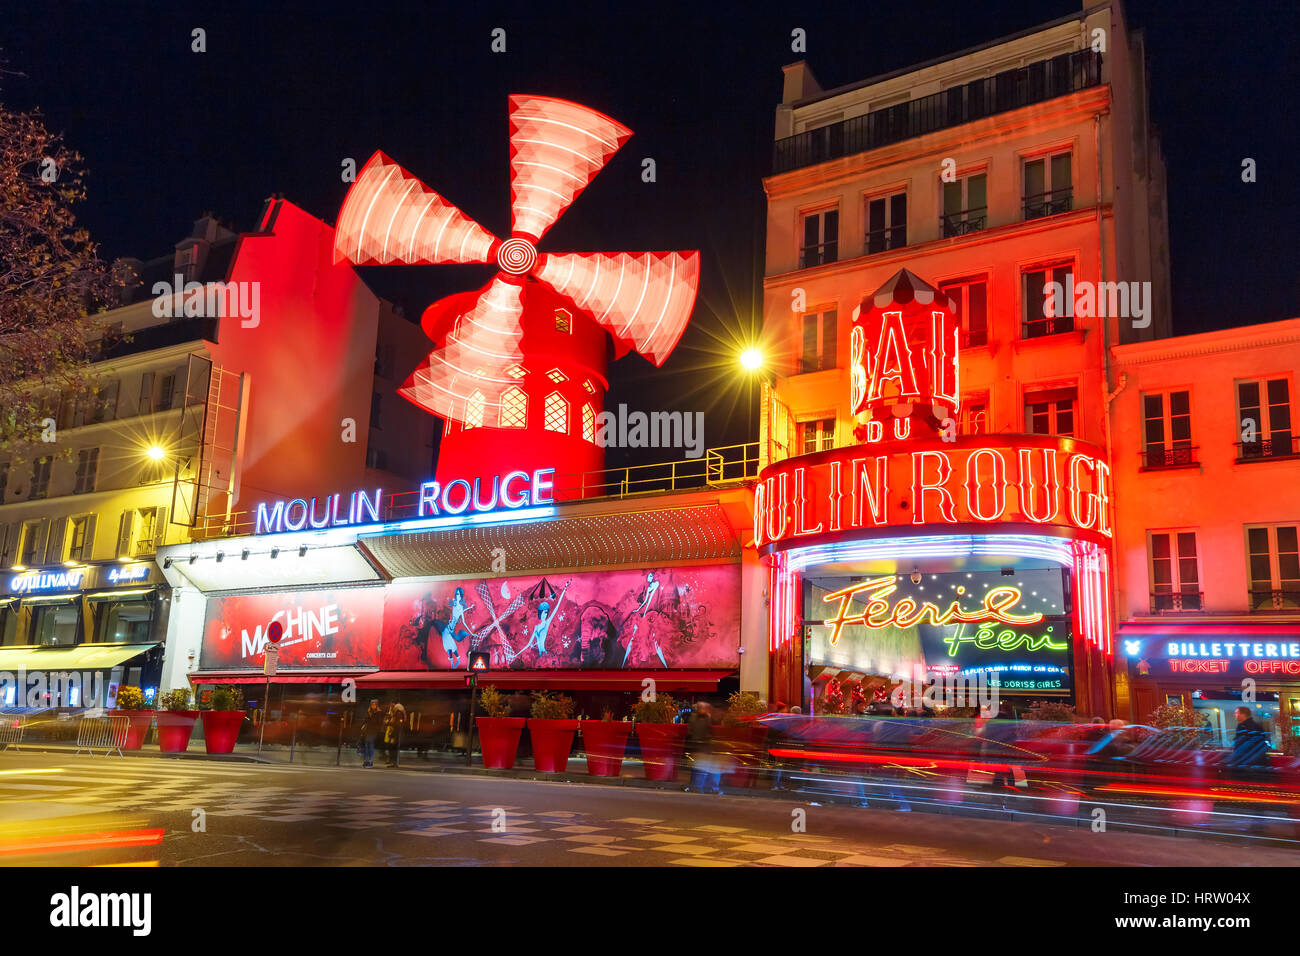 París, Francia - 28 de diciembre de 2016: El pintoresco famoso cabaret Moulin Rouge ubicado cerca de Montmartre en París, barrio rojo de Pigalle Foto de stock